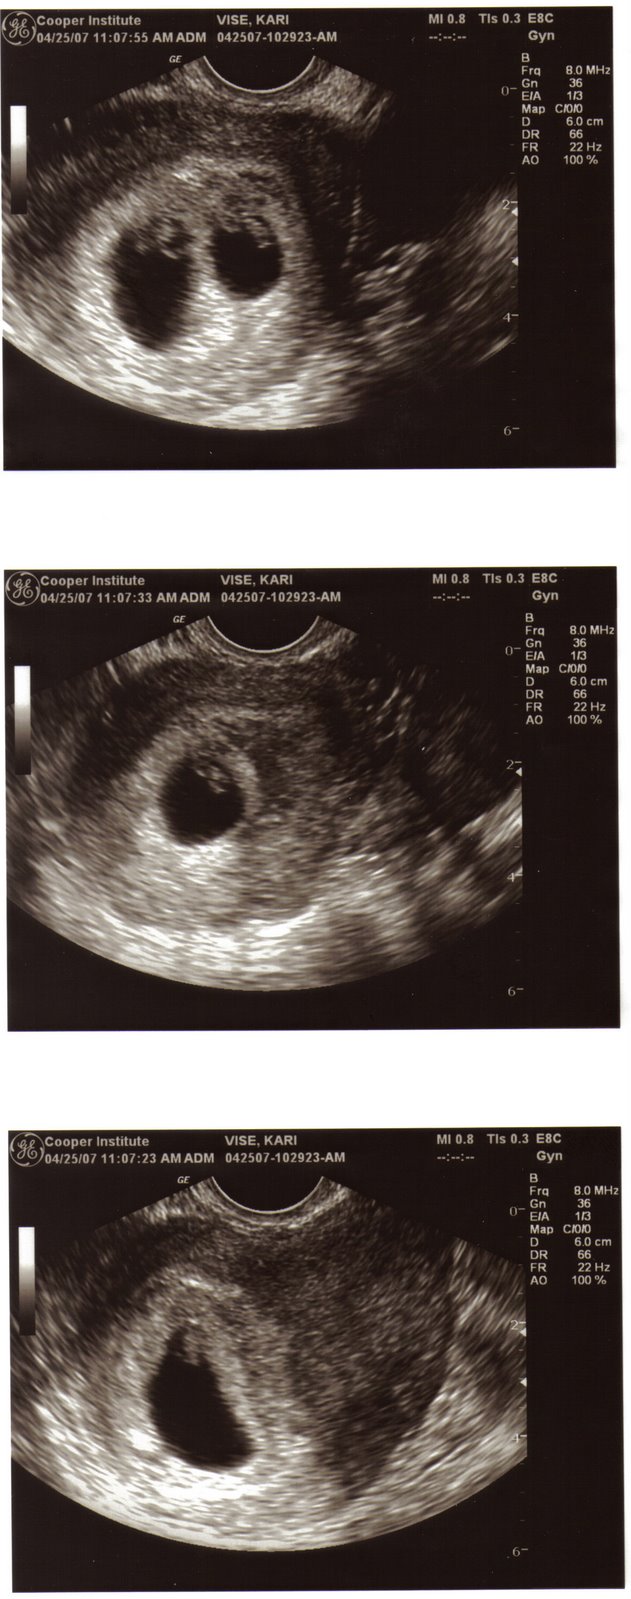 [7+week+embryos.jpg]